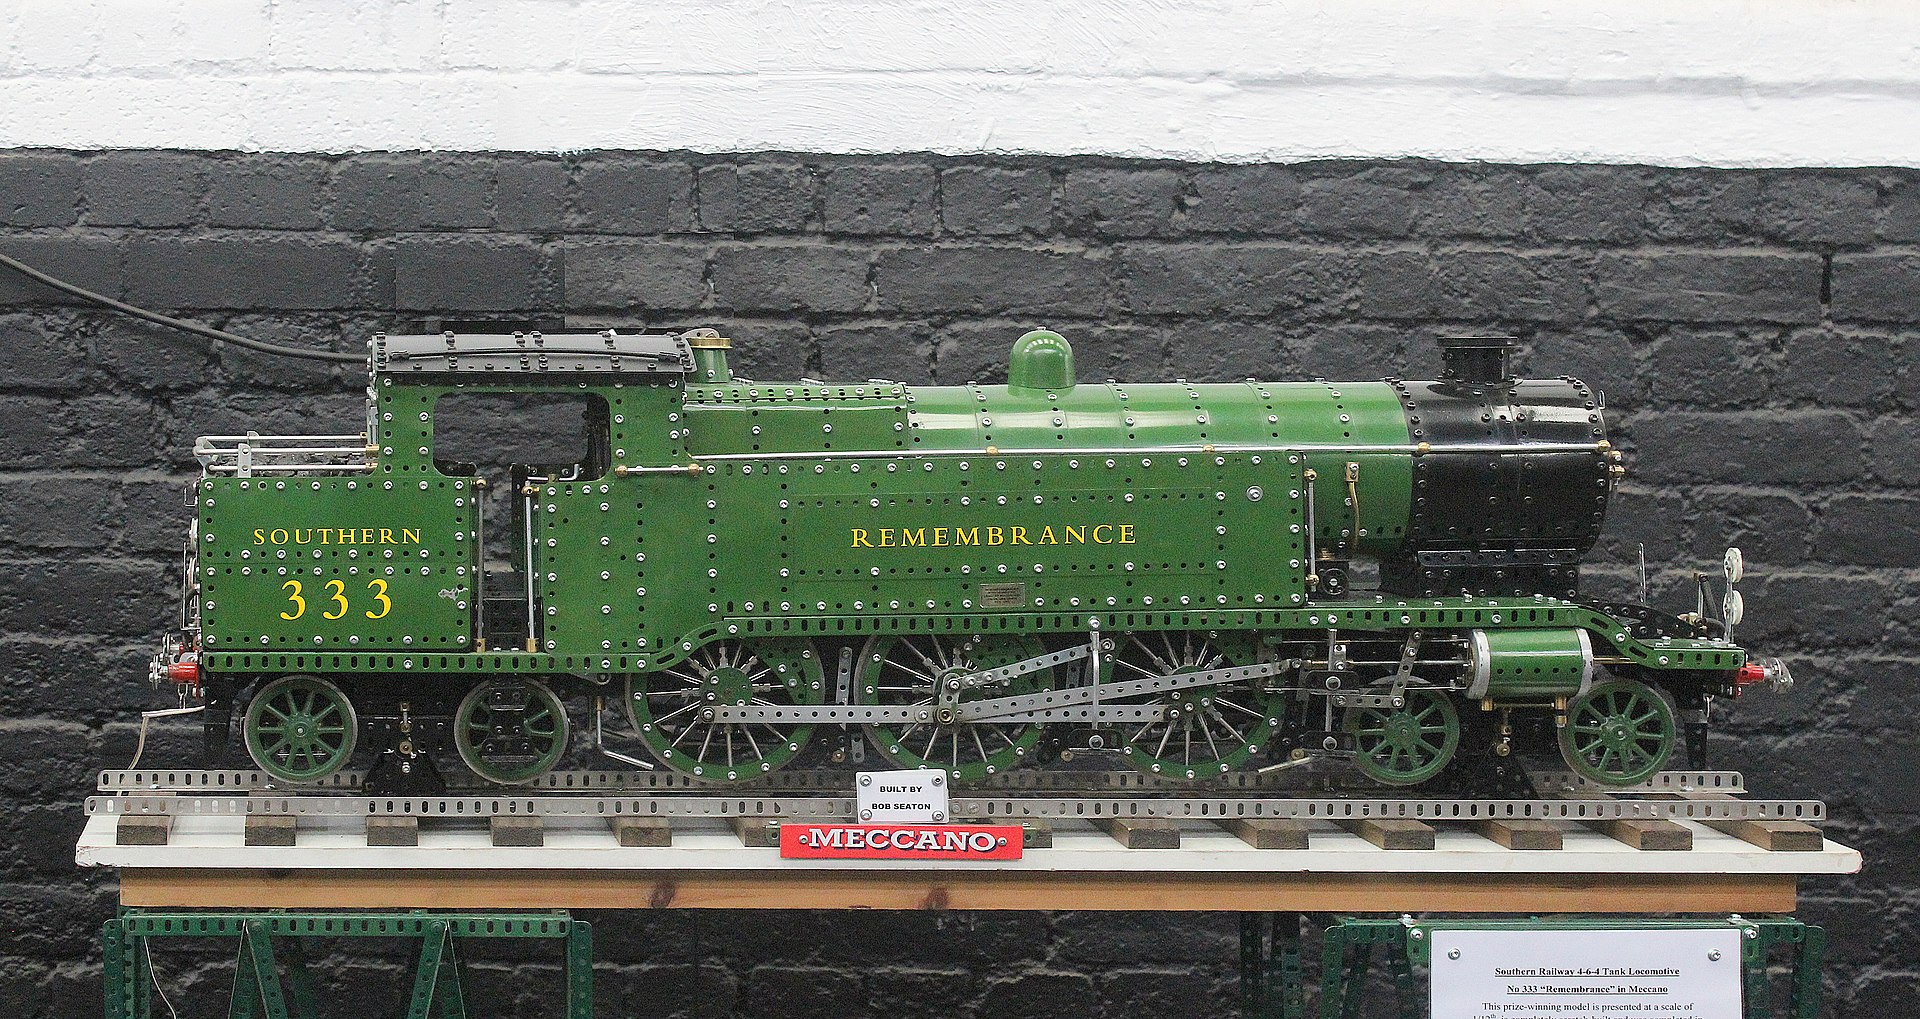 Maquette d'une locomotive à vapeur construite par un passionné en 2013. La voie ferrée a une longueur de 120 cm